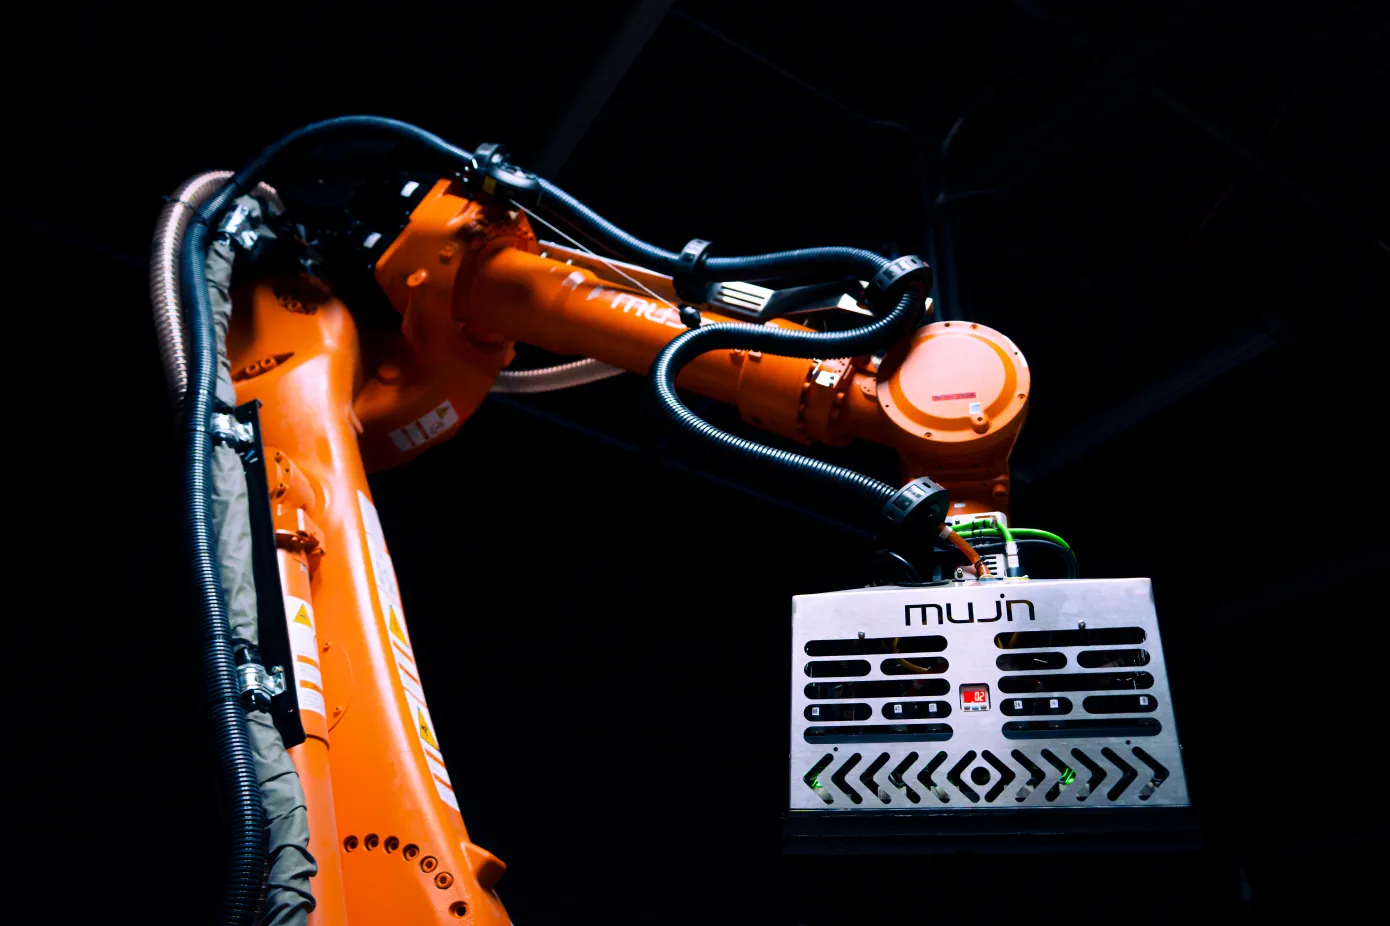 Twórca oprogramowania dla robotów Mujin pozyskał 85 milionów dolarów finansowania